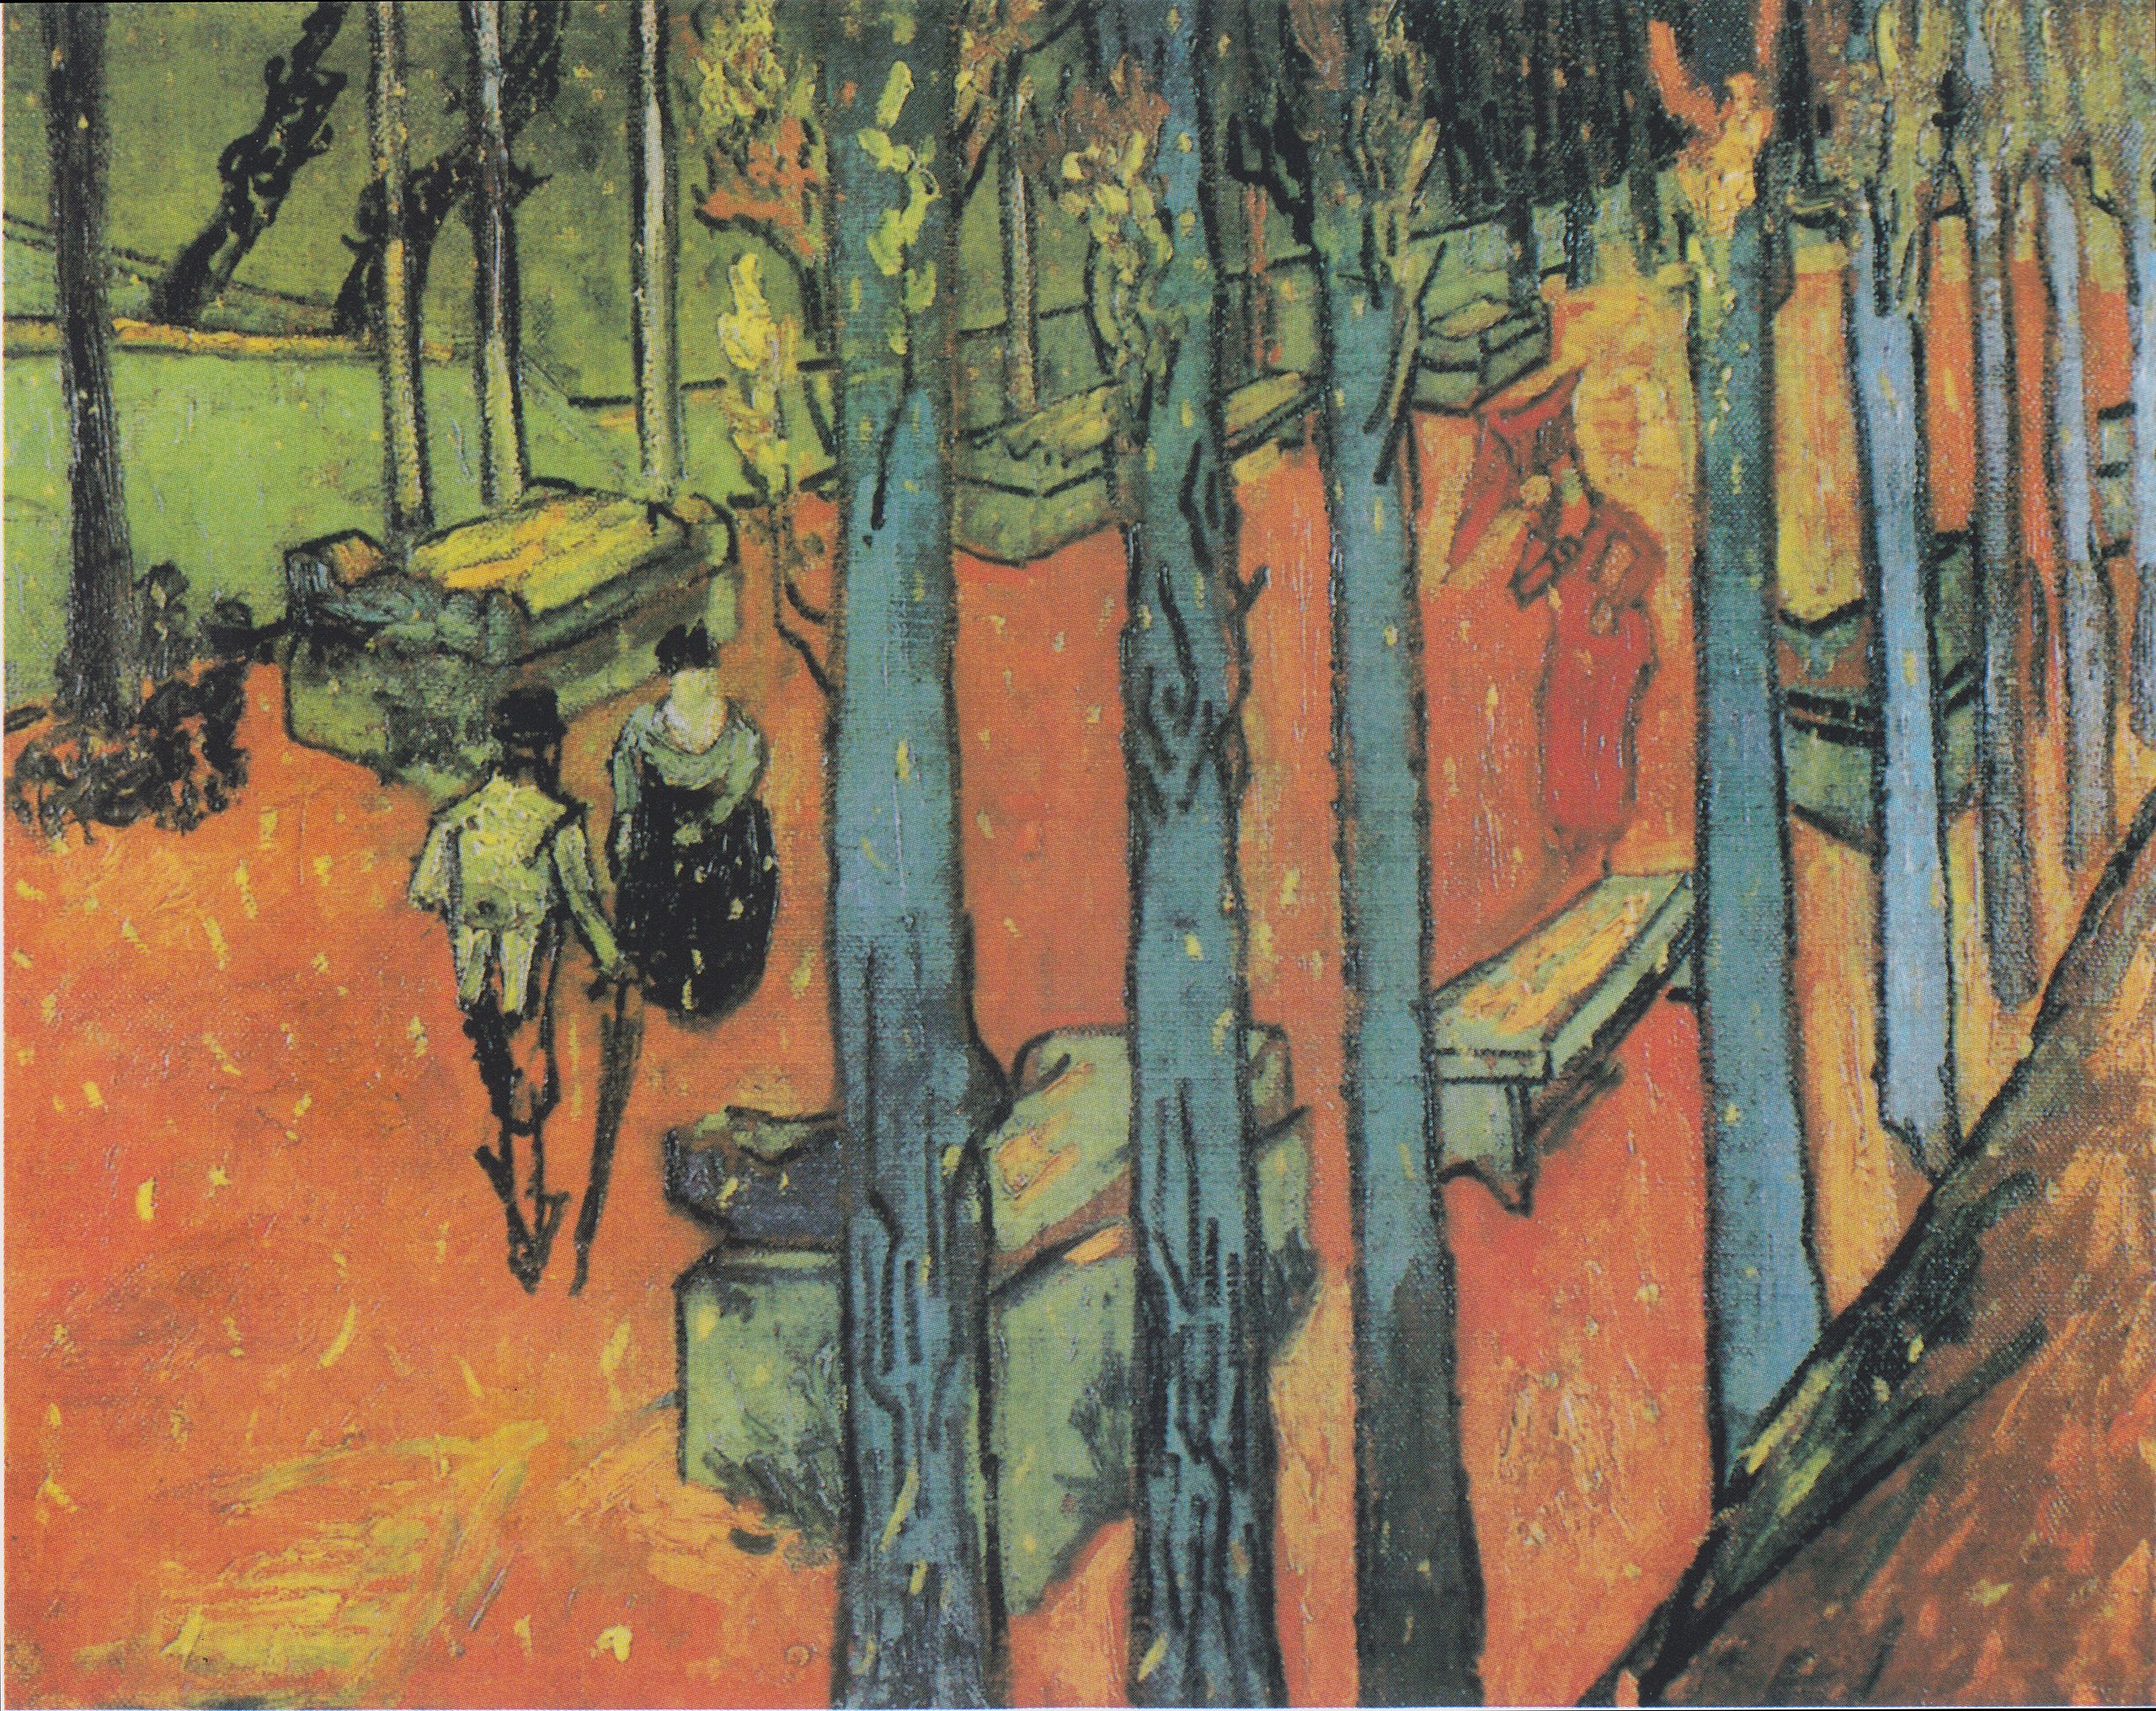 Опадающие листья (Алискан) by Винсе́нт Виллем Ван Гог - 1888 - 72,8 × 91,9 см 